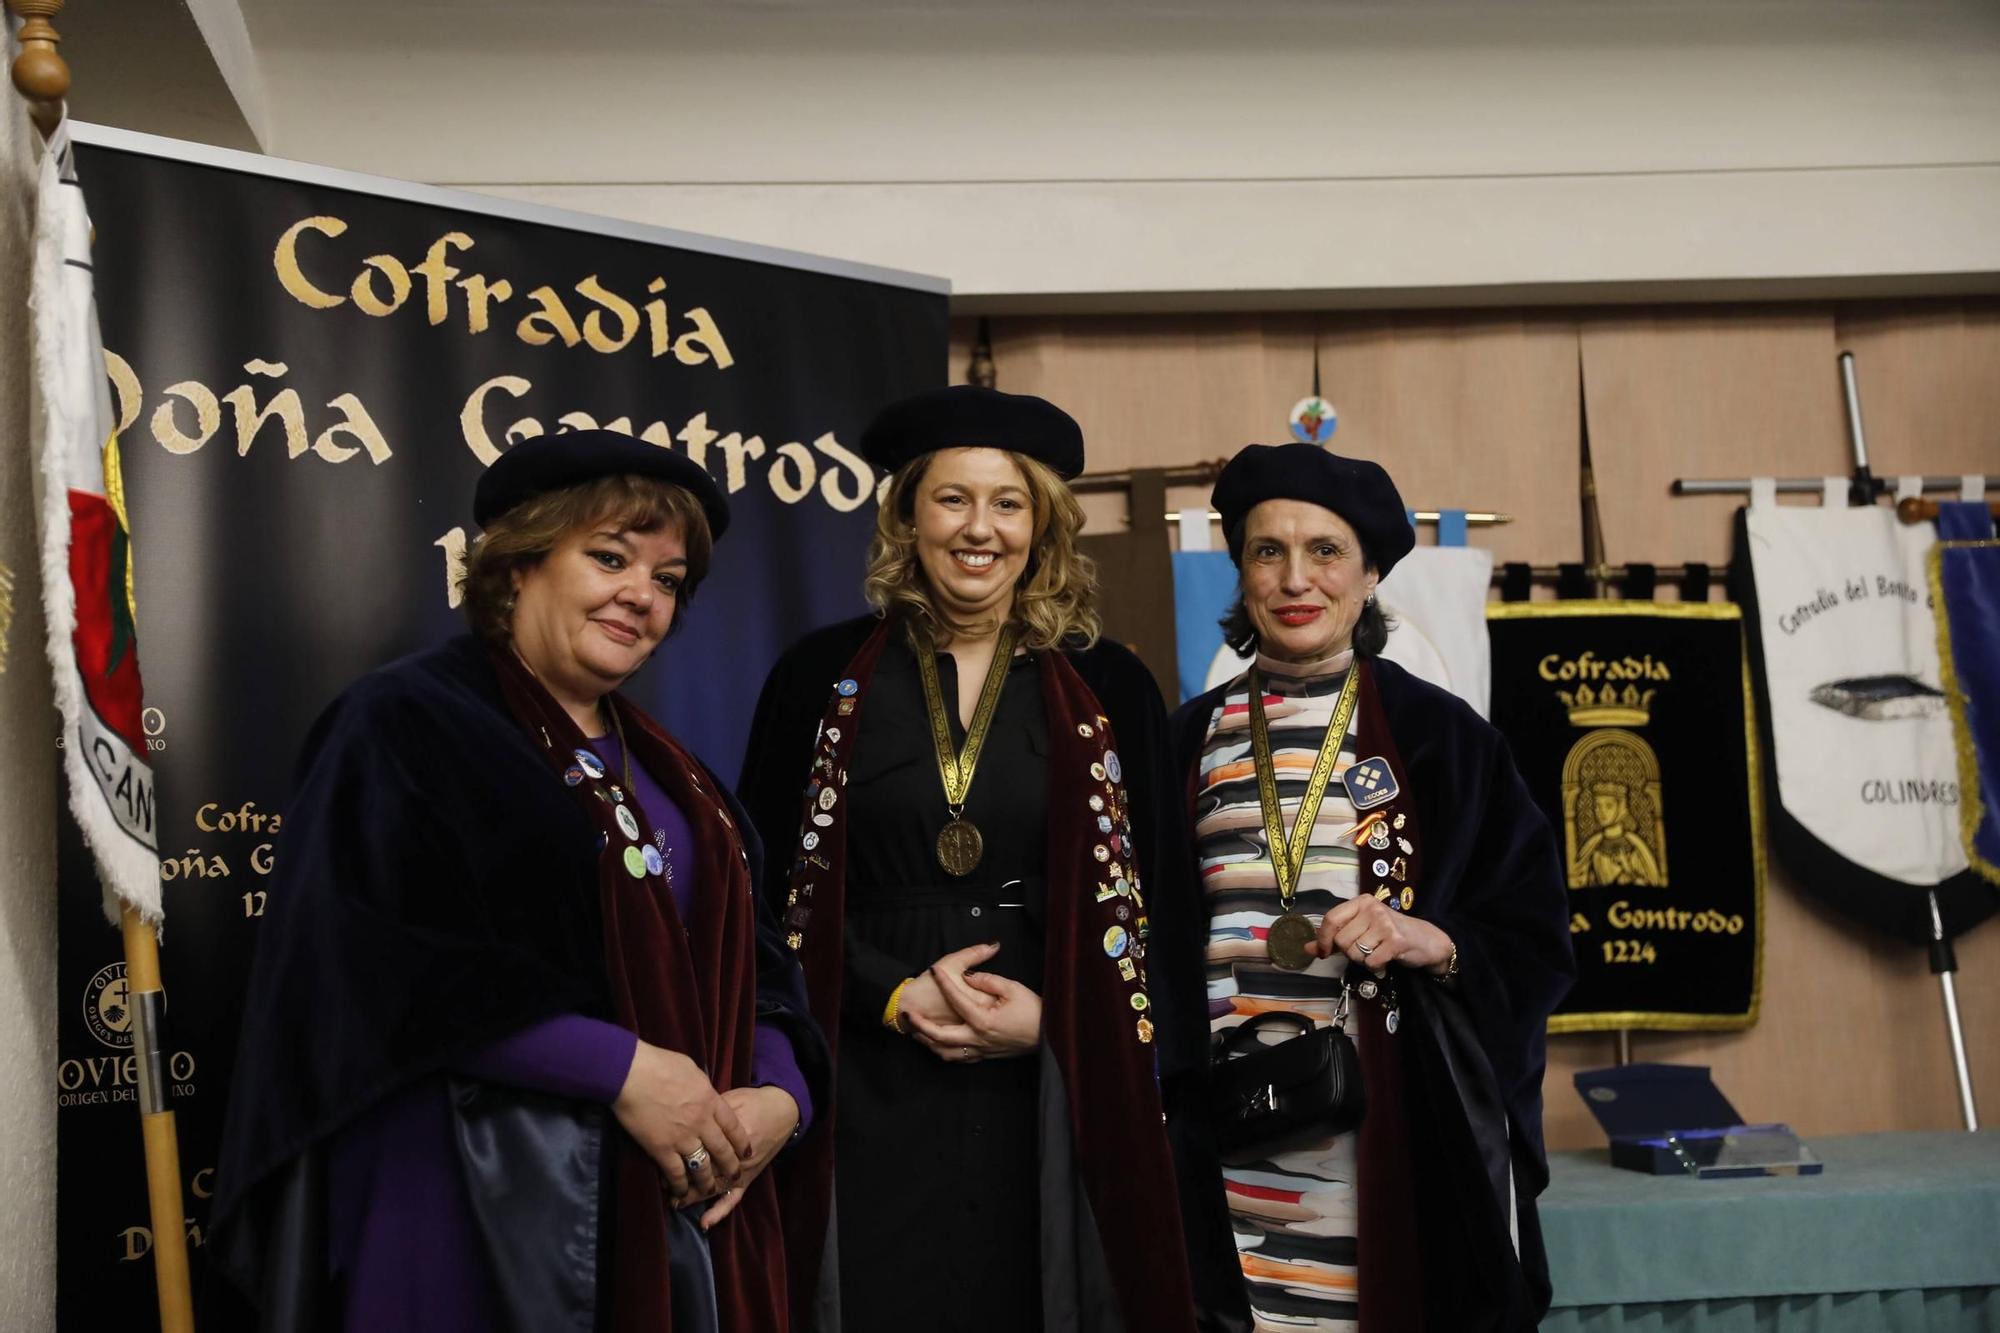 En imágenes | La cofradía Doña Gontrodo homenajea a María Luisa Llavona